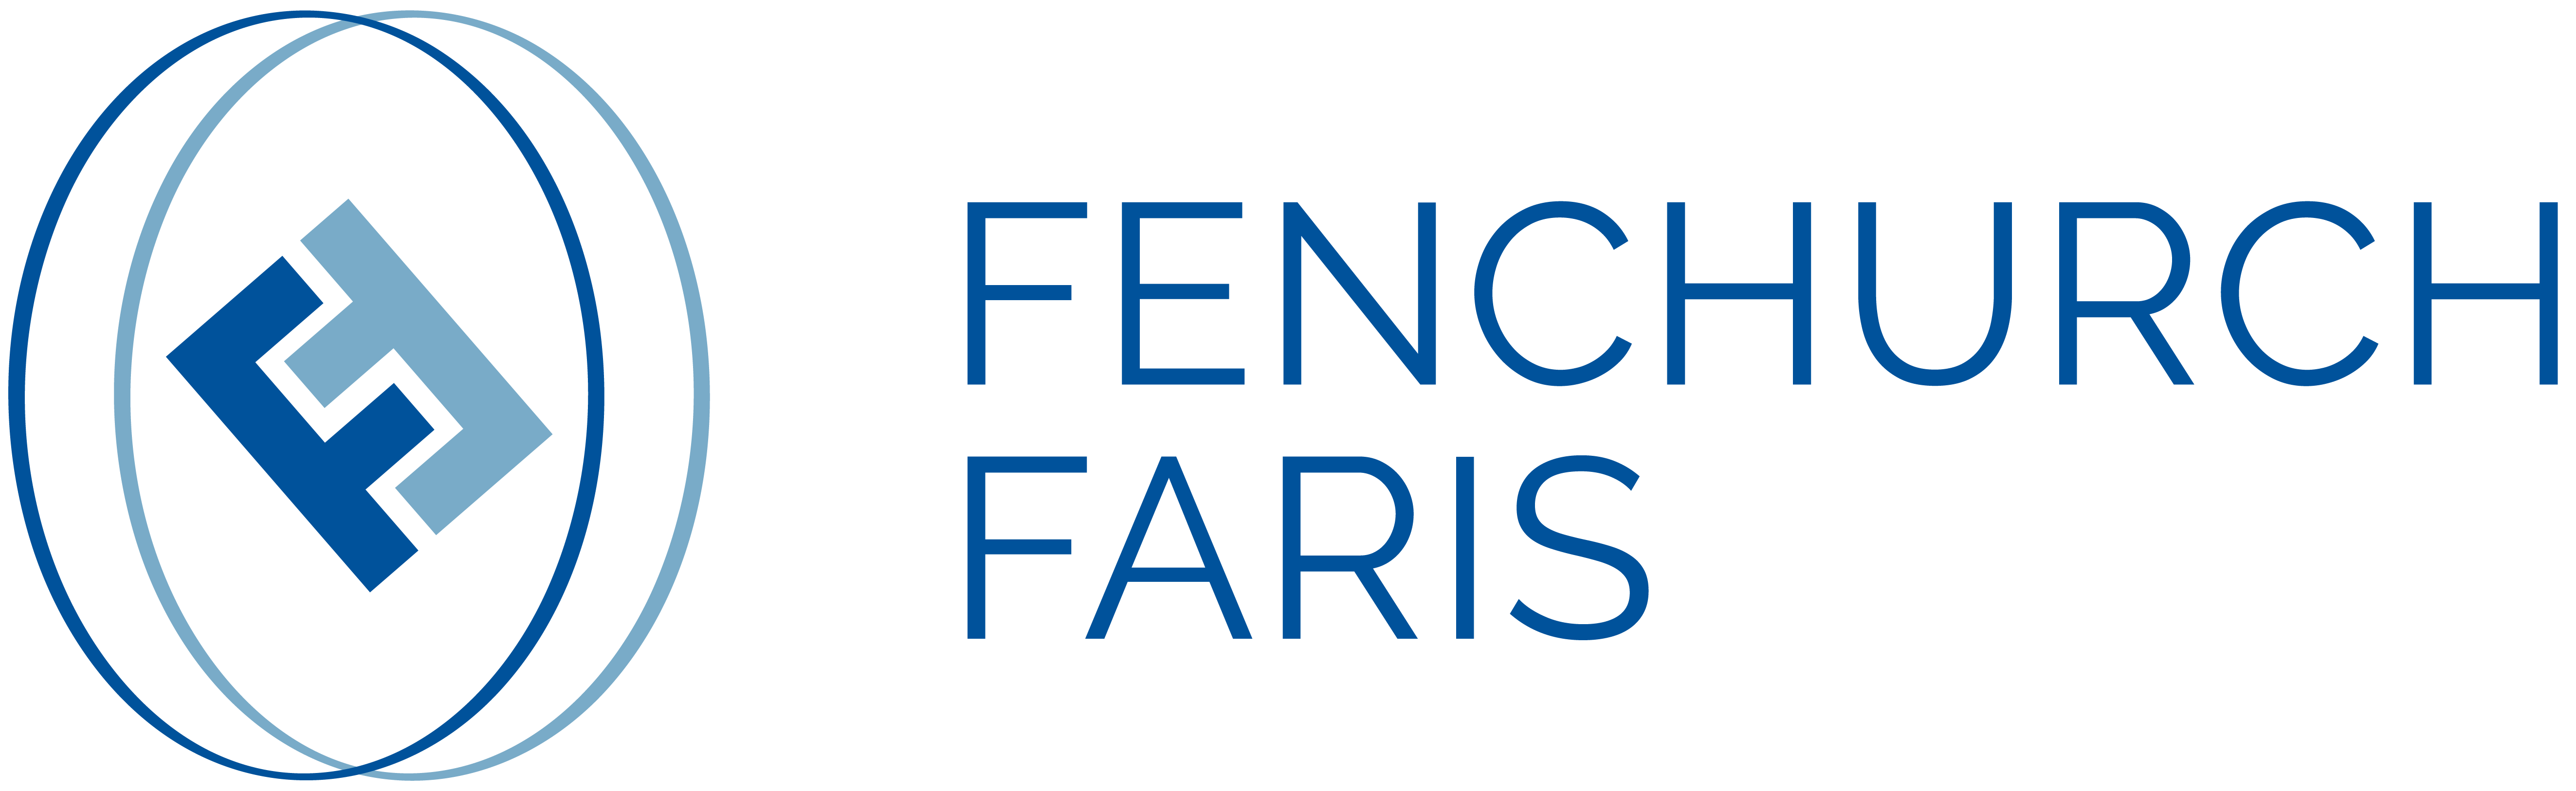 Fenchurch Faris Company